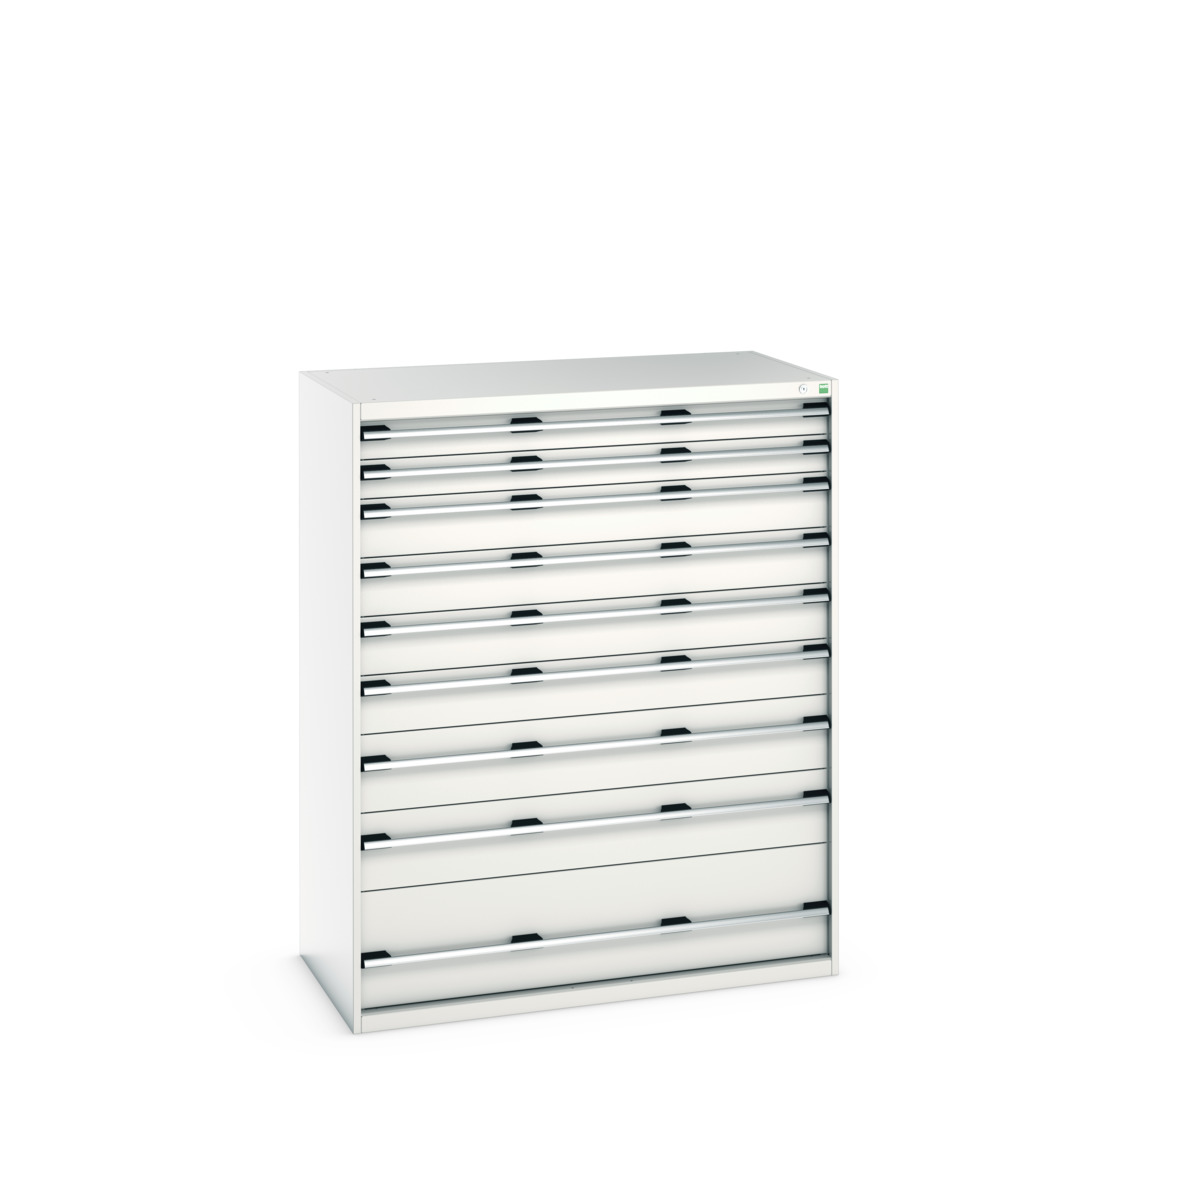 40030076.16V - cubio drawer cabinet